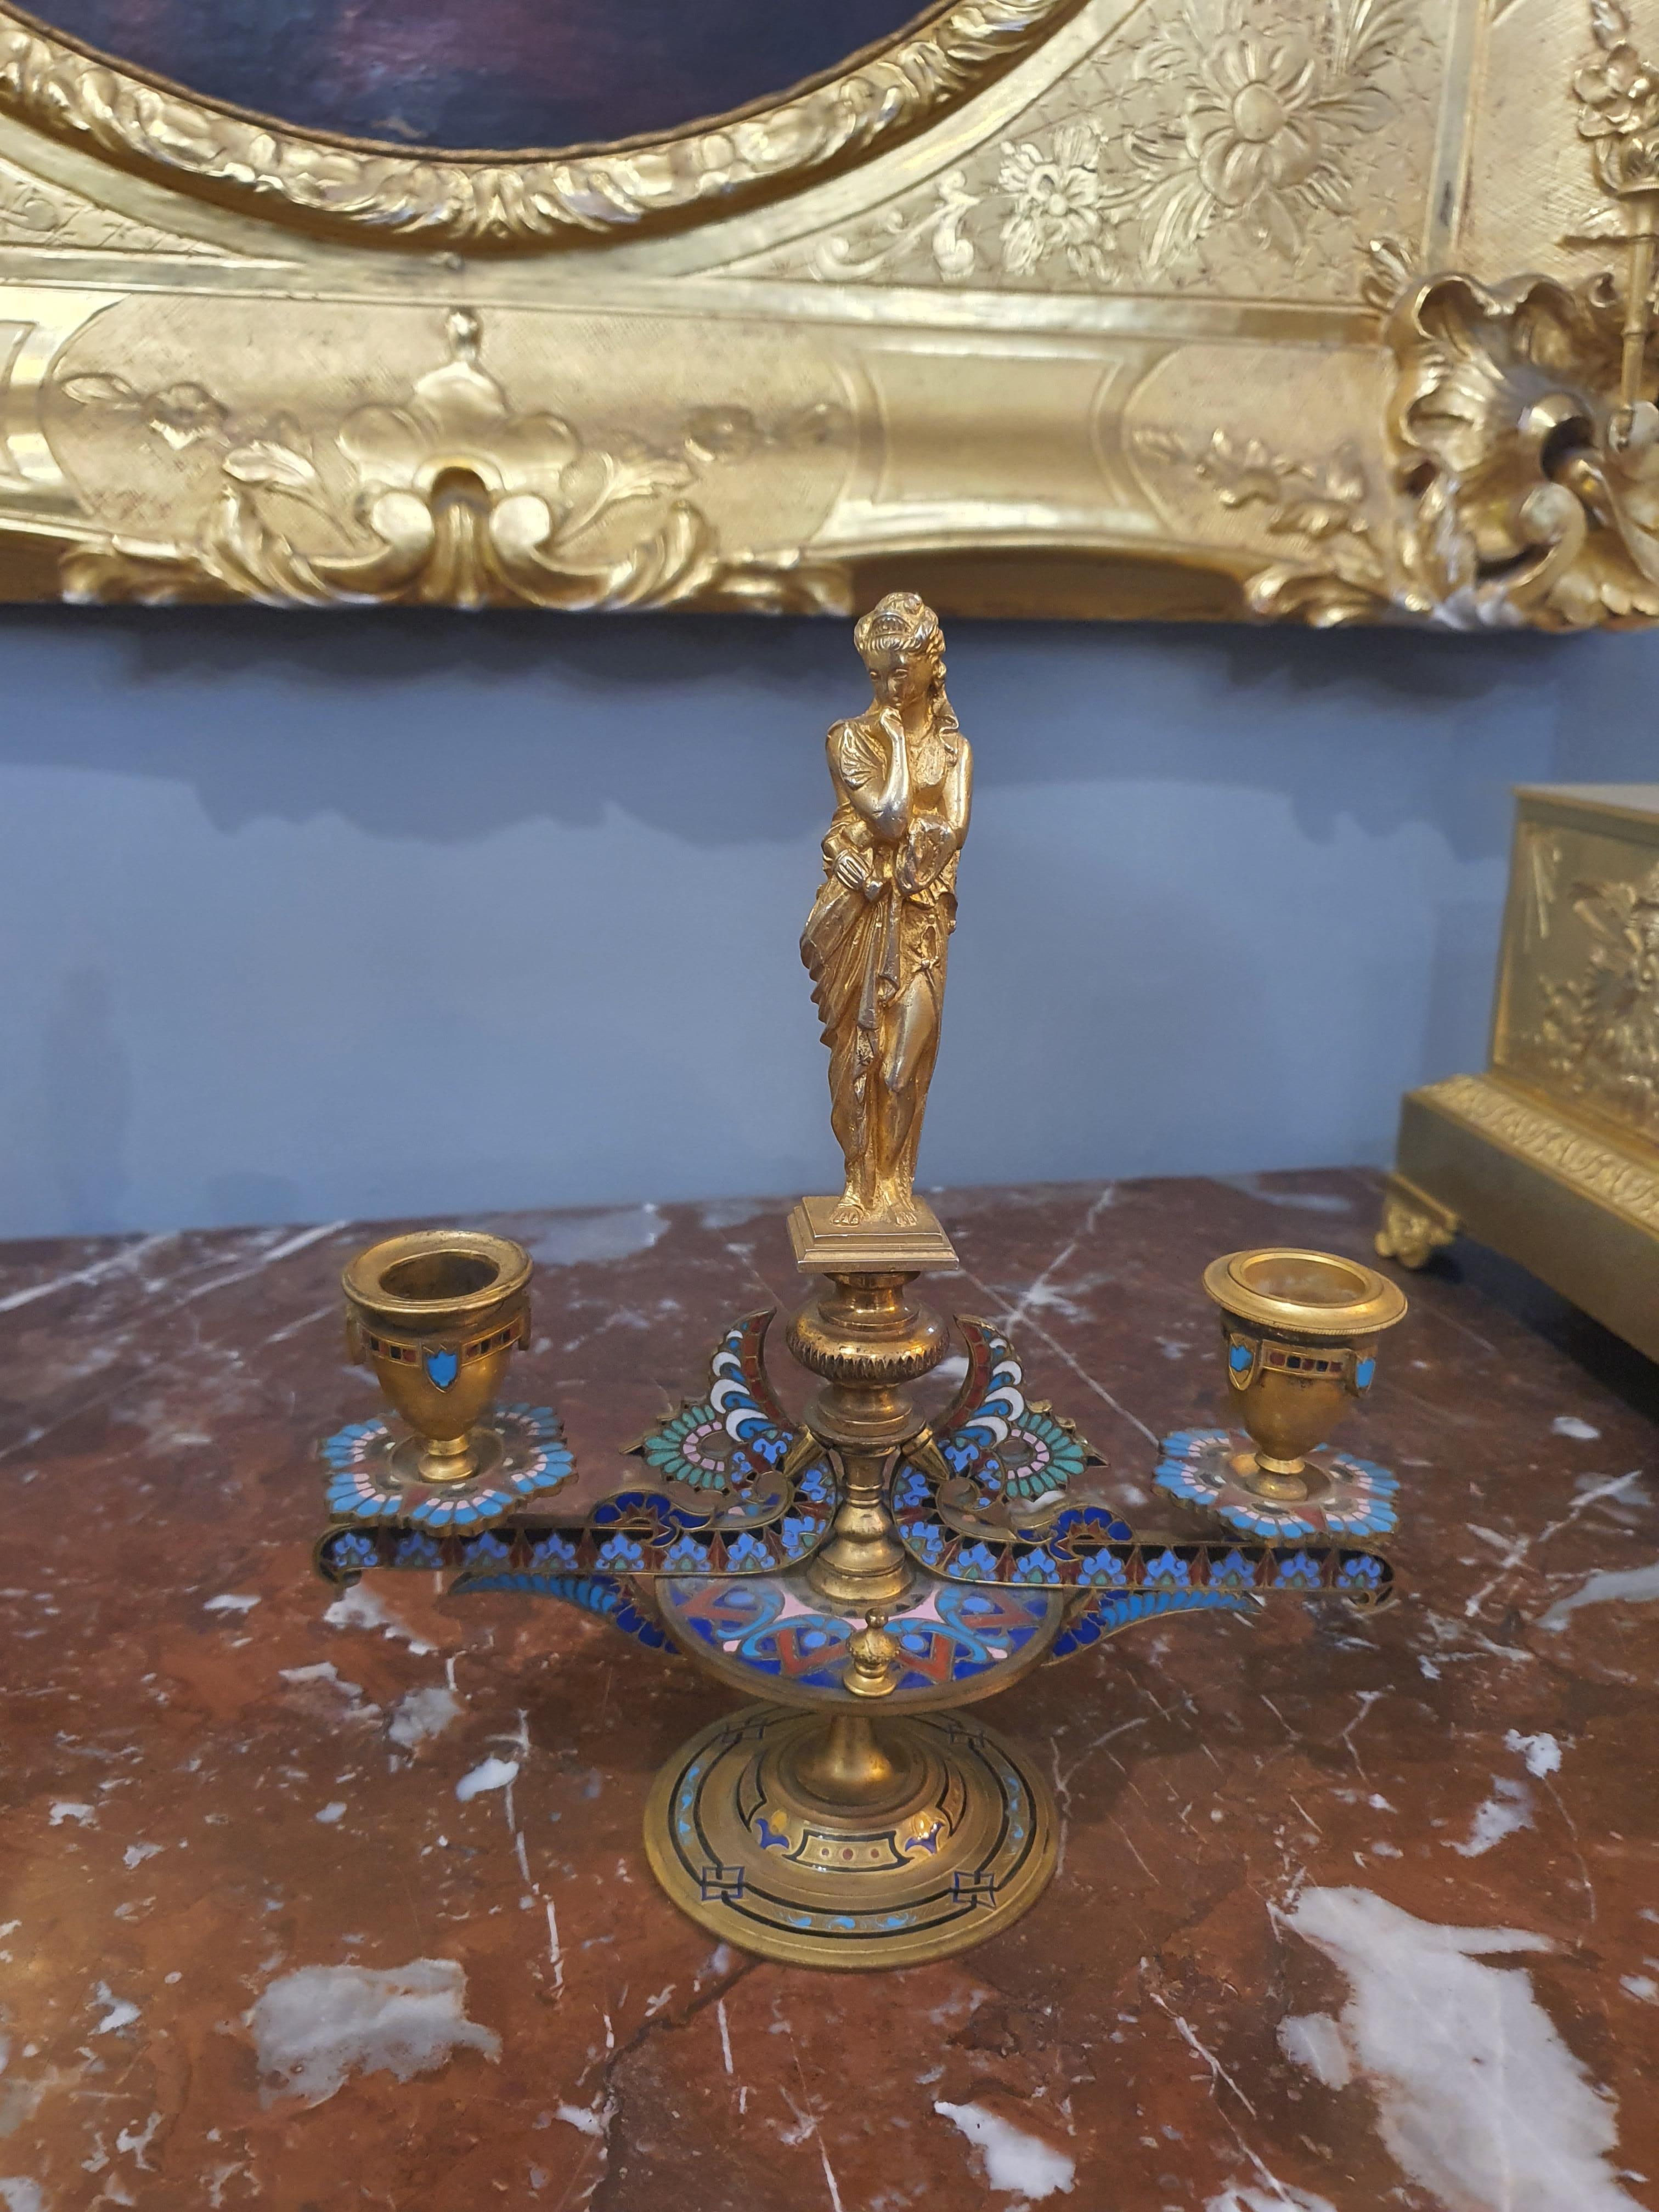 Elegantes Paar fein ziselierter und vergoldeter Bronzekandelaber mit Cloisonné-Emaillierung.
Cloisonné, auch Byzanz-Glanz genannt, ist eine künstlerische Emaille-Dekorationstechnik.